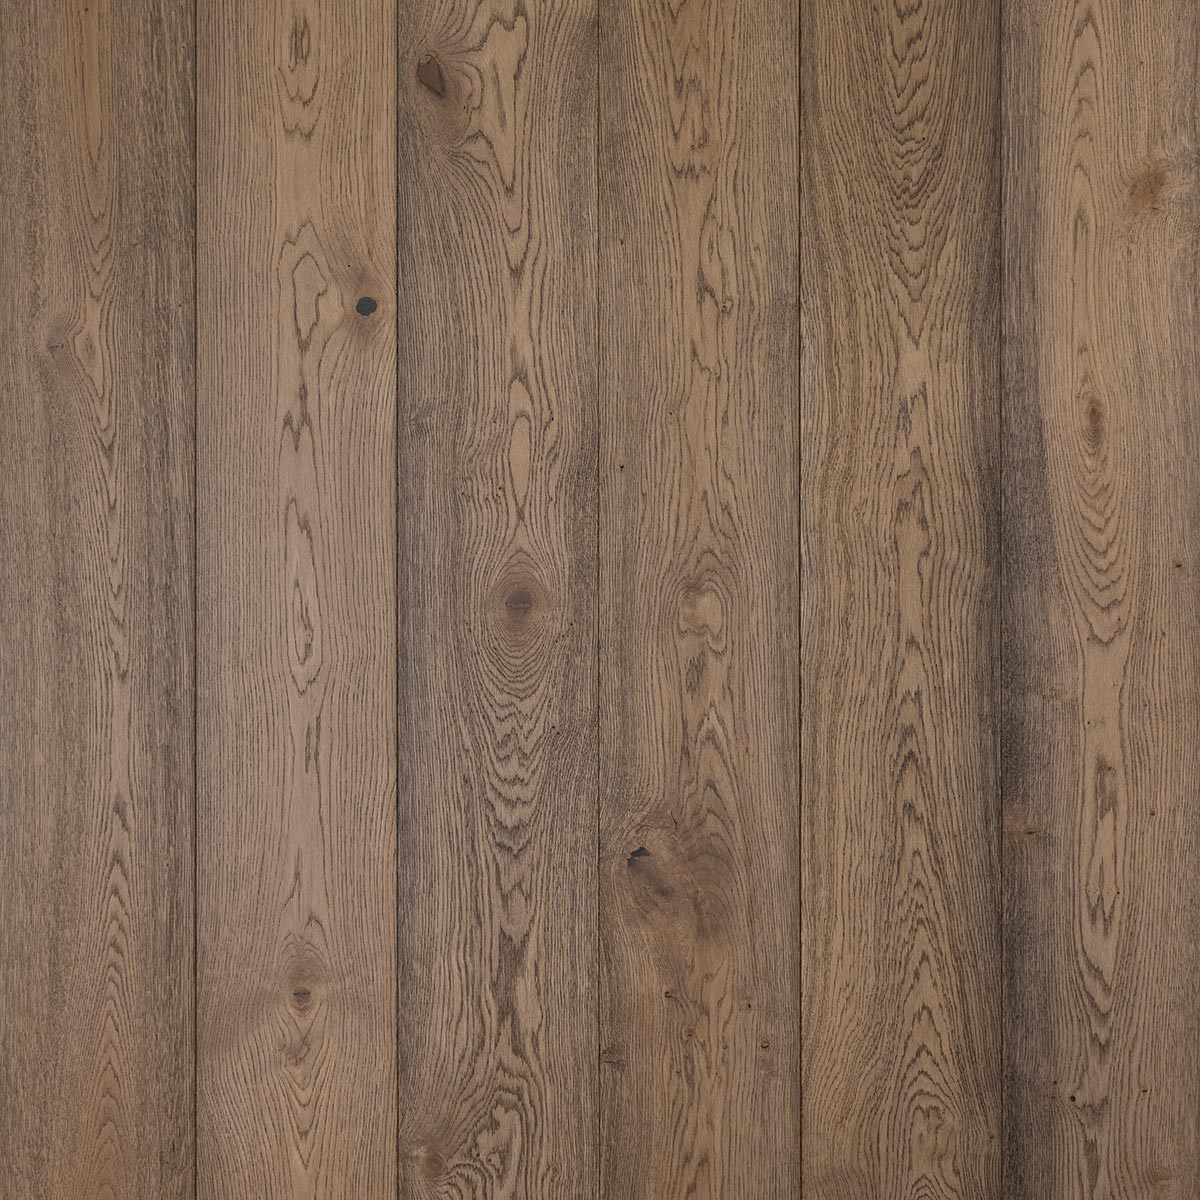 HG101 Kingswood - Brushed & Oiled Rustic Oak Bevelled Wooden Floor